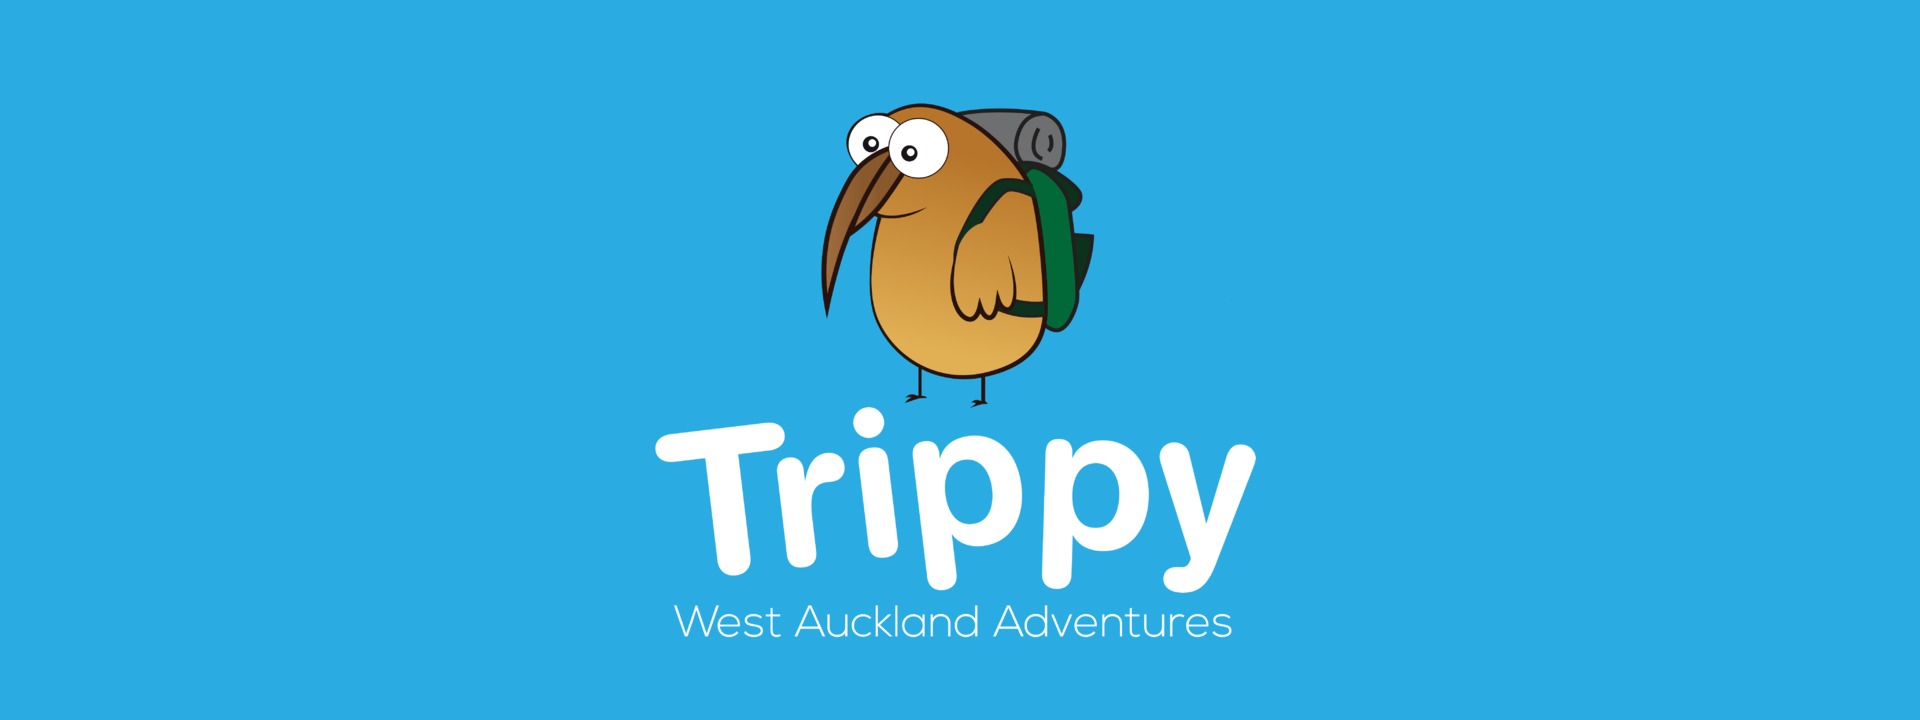 Logo: Trippy - West Auckland Adventures